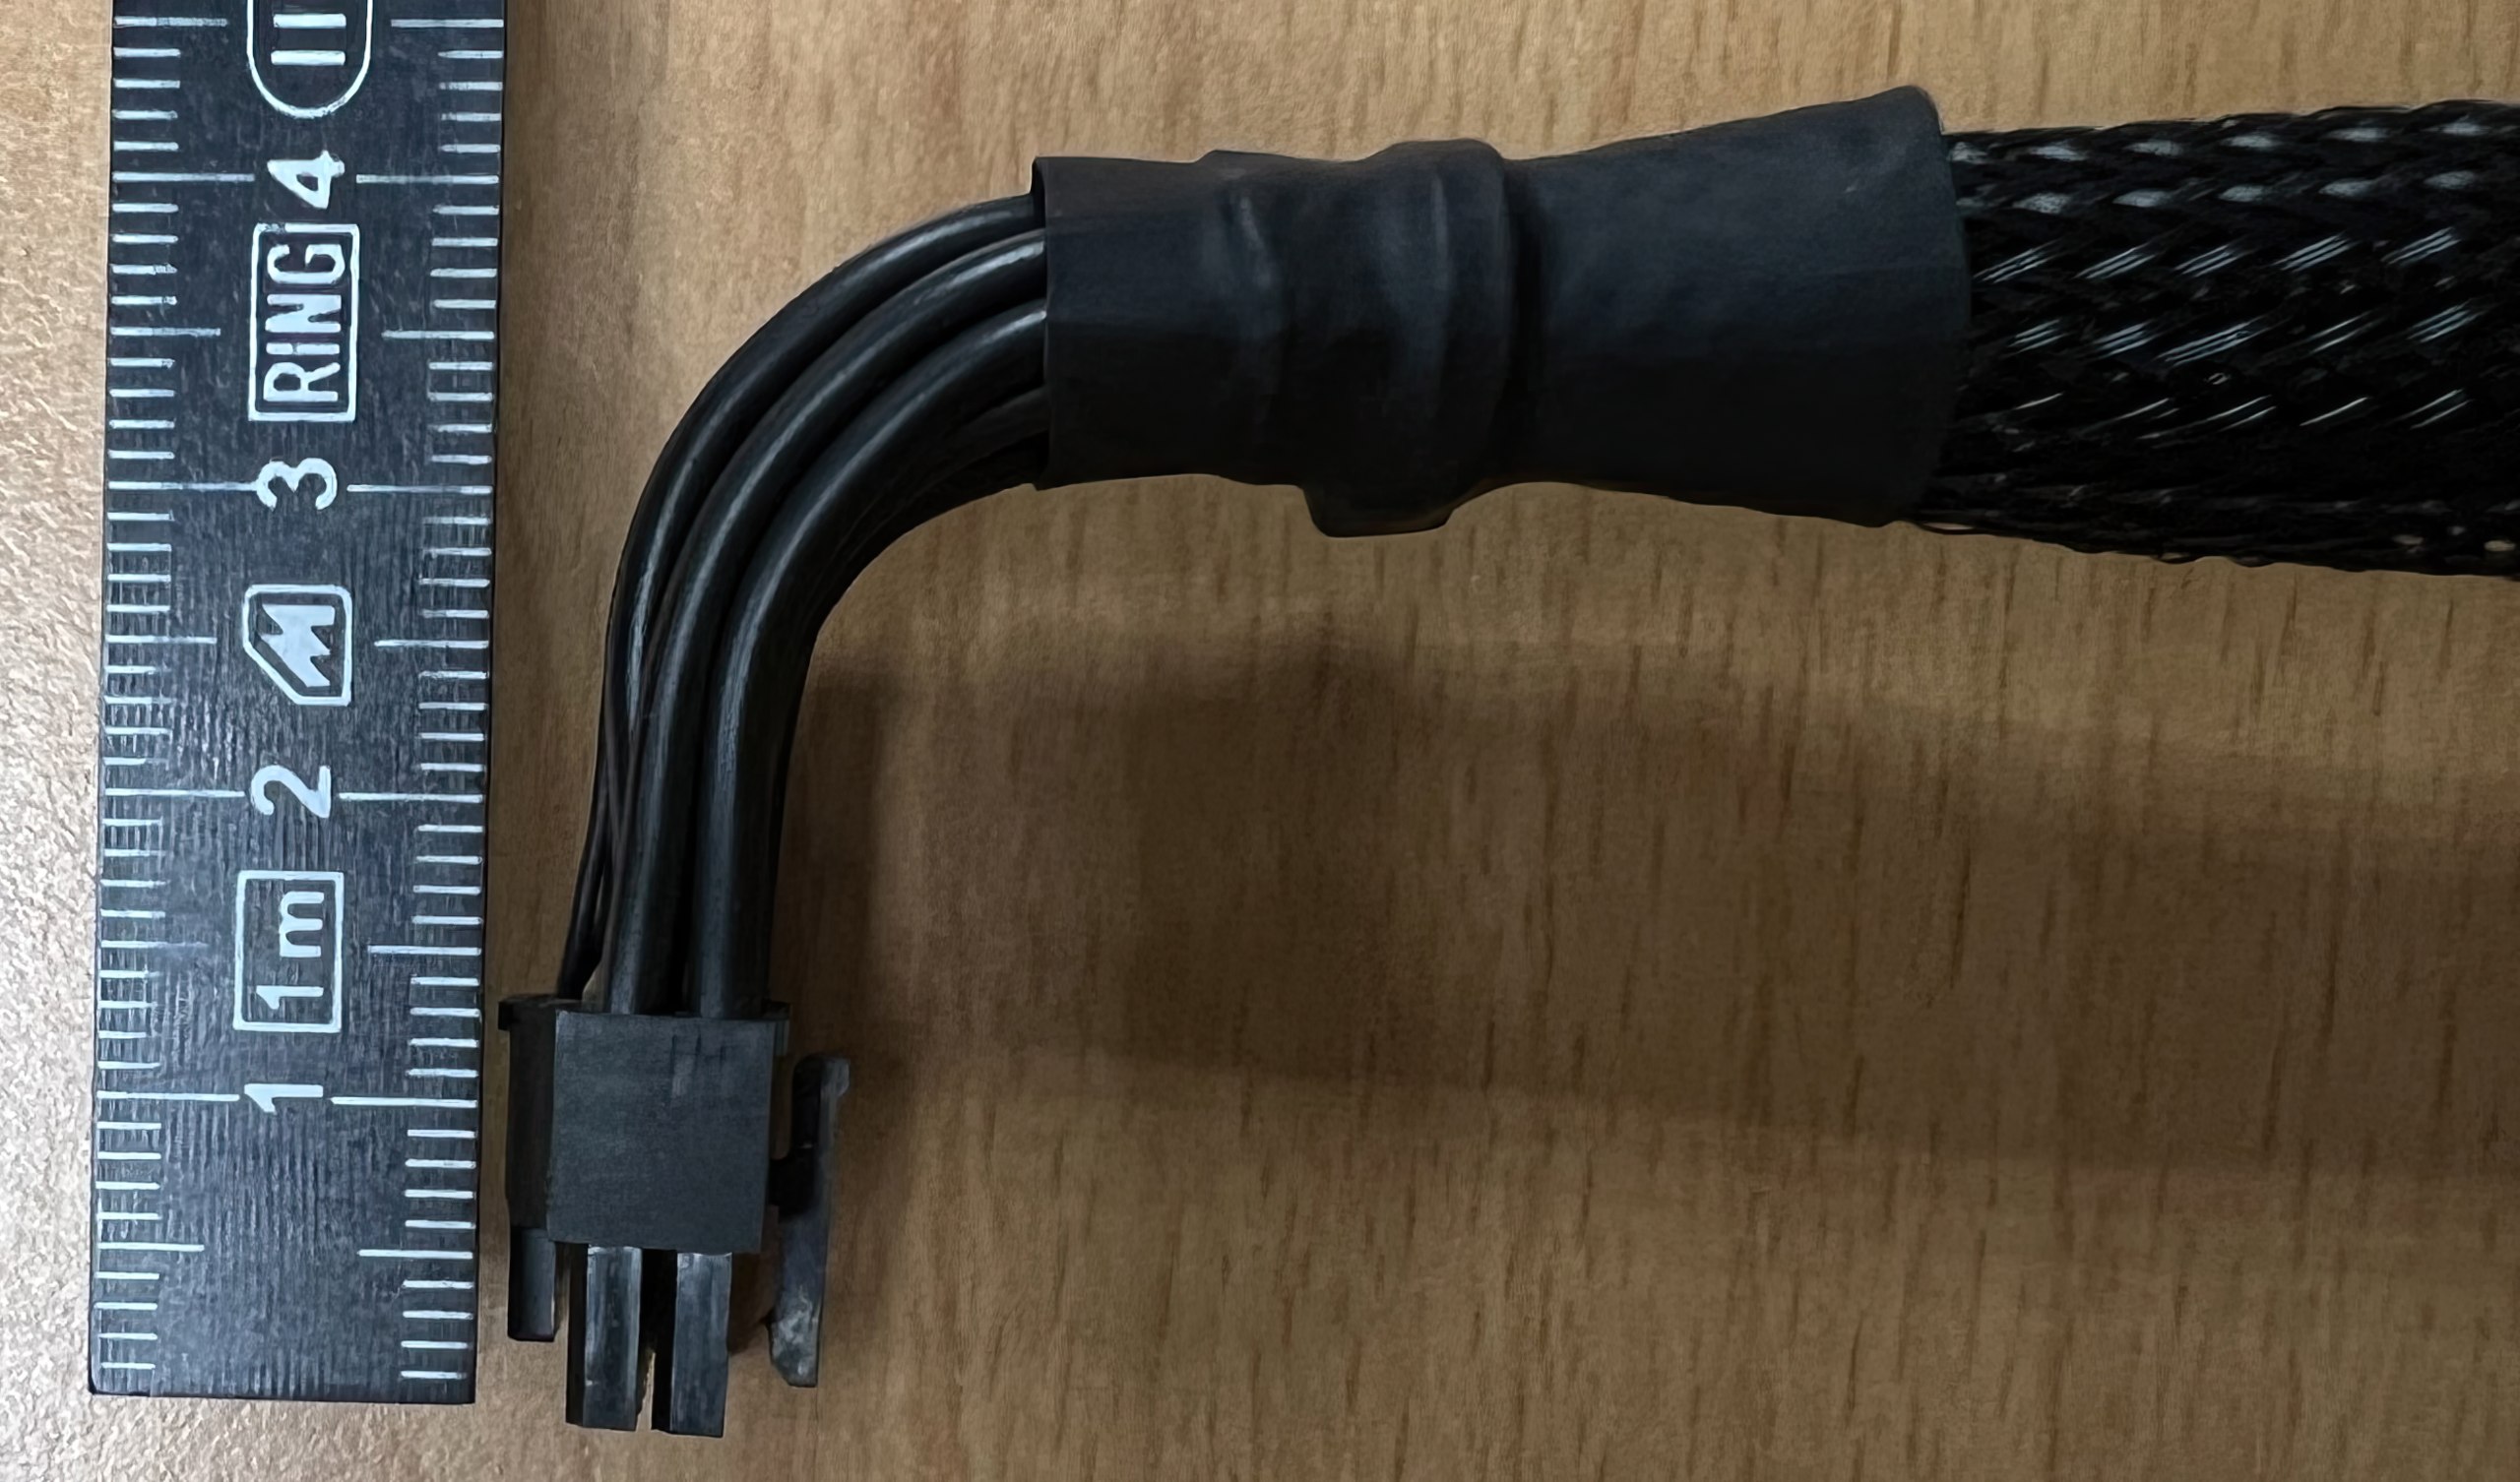 USB Ladekabel für Braun Series 3, Series 7, Series 9